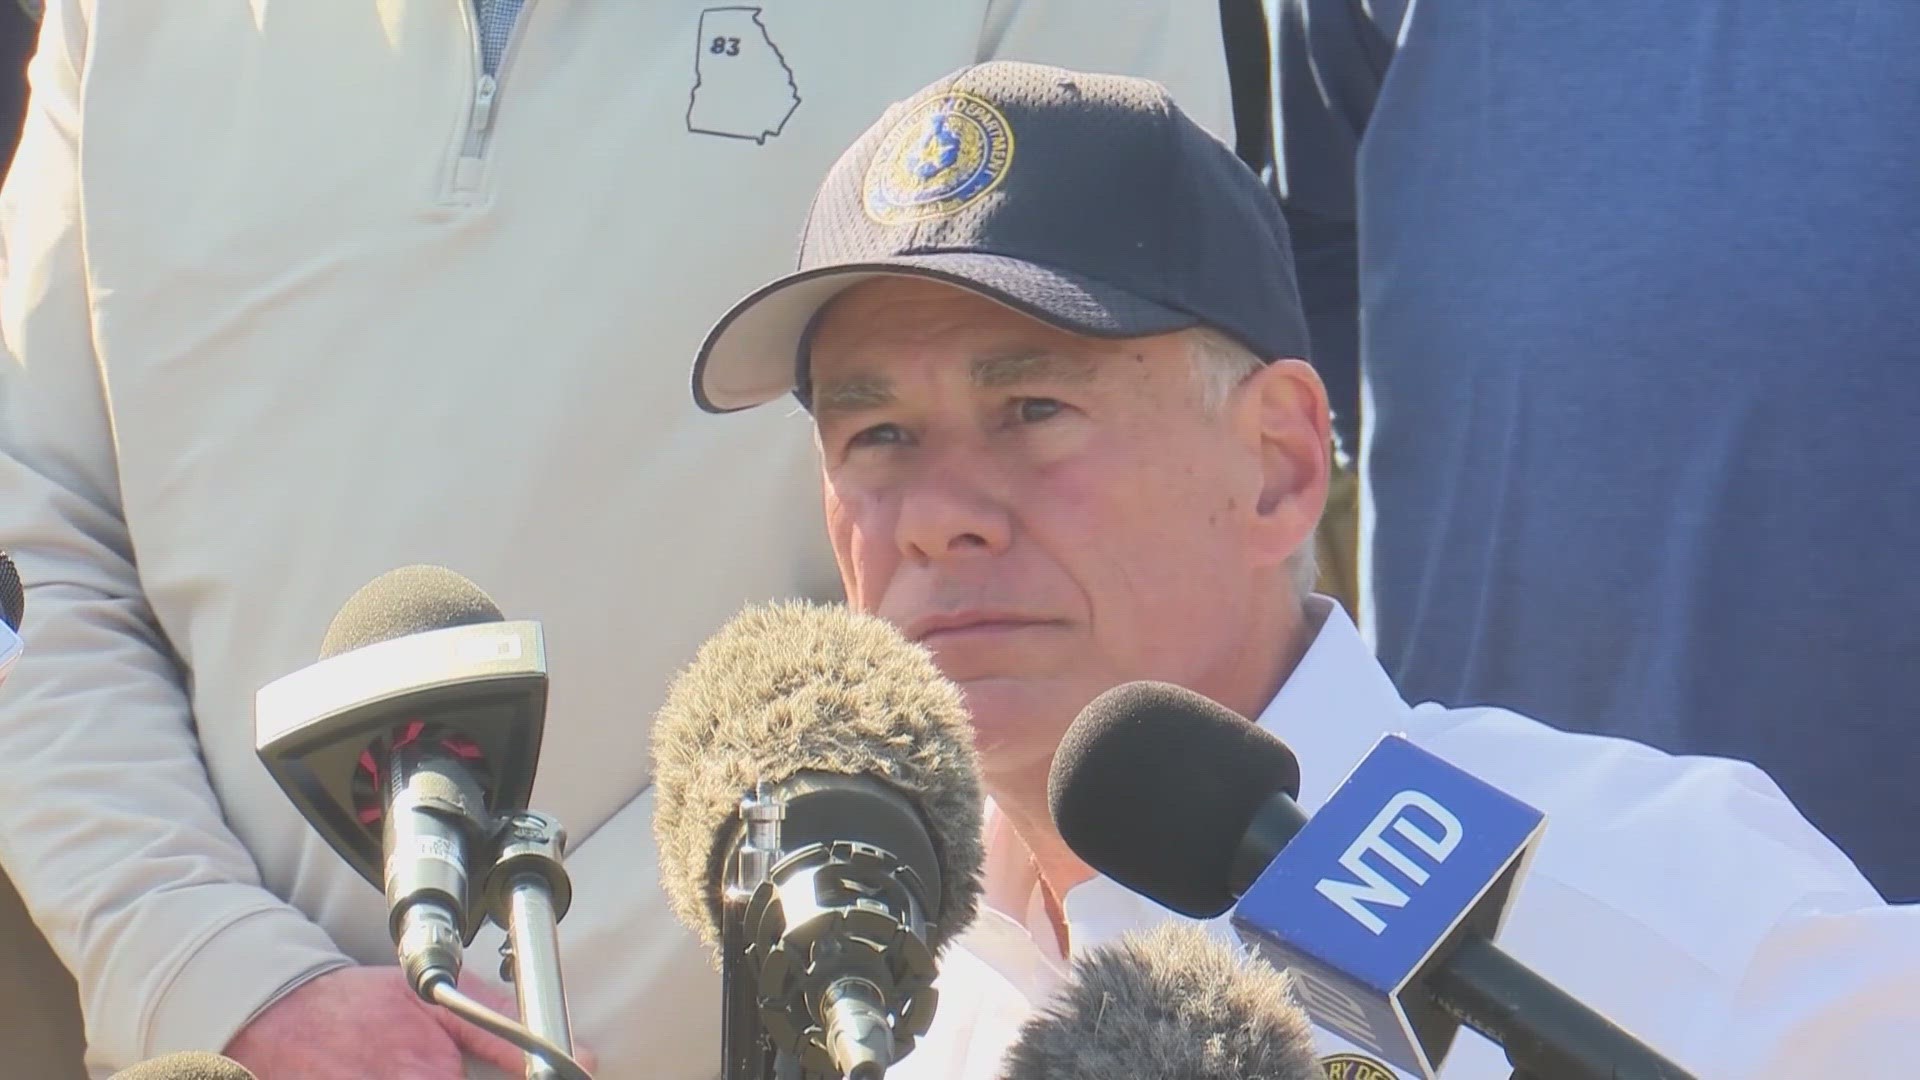 Gov. Greg Abbott addresses another halt on SB4